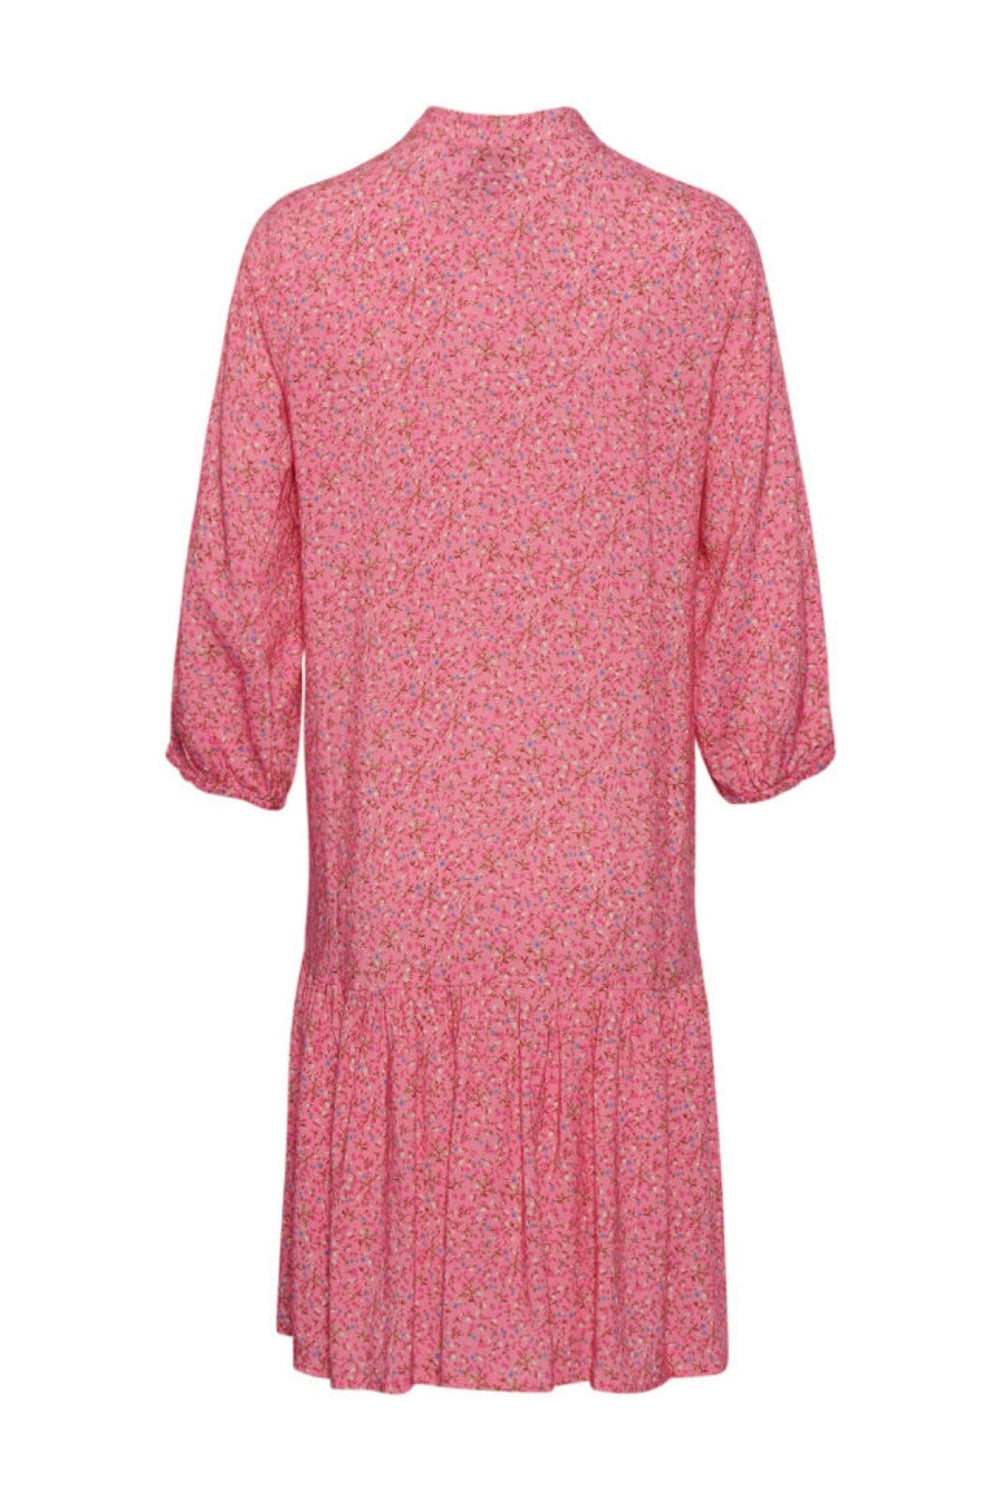 Noella - Imogene Dress - Pink Flower Kjoler 